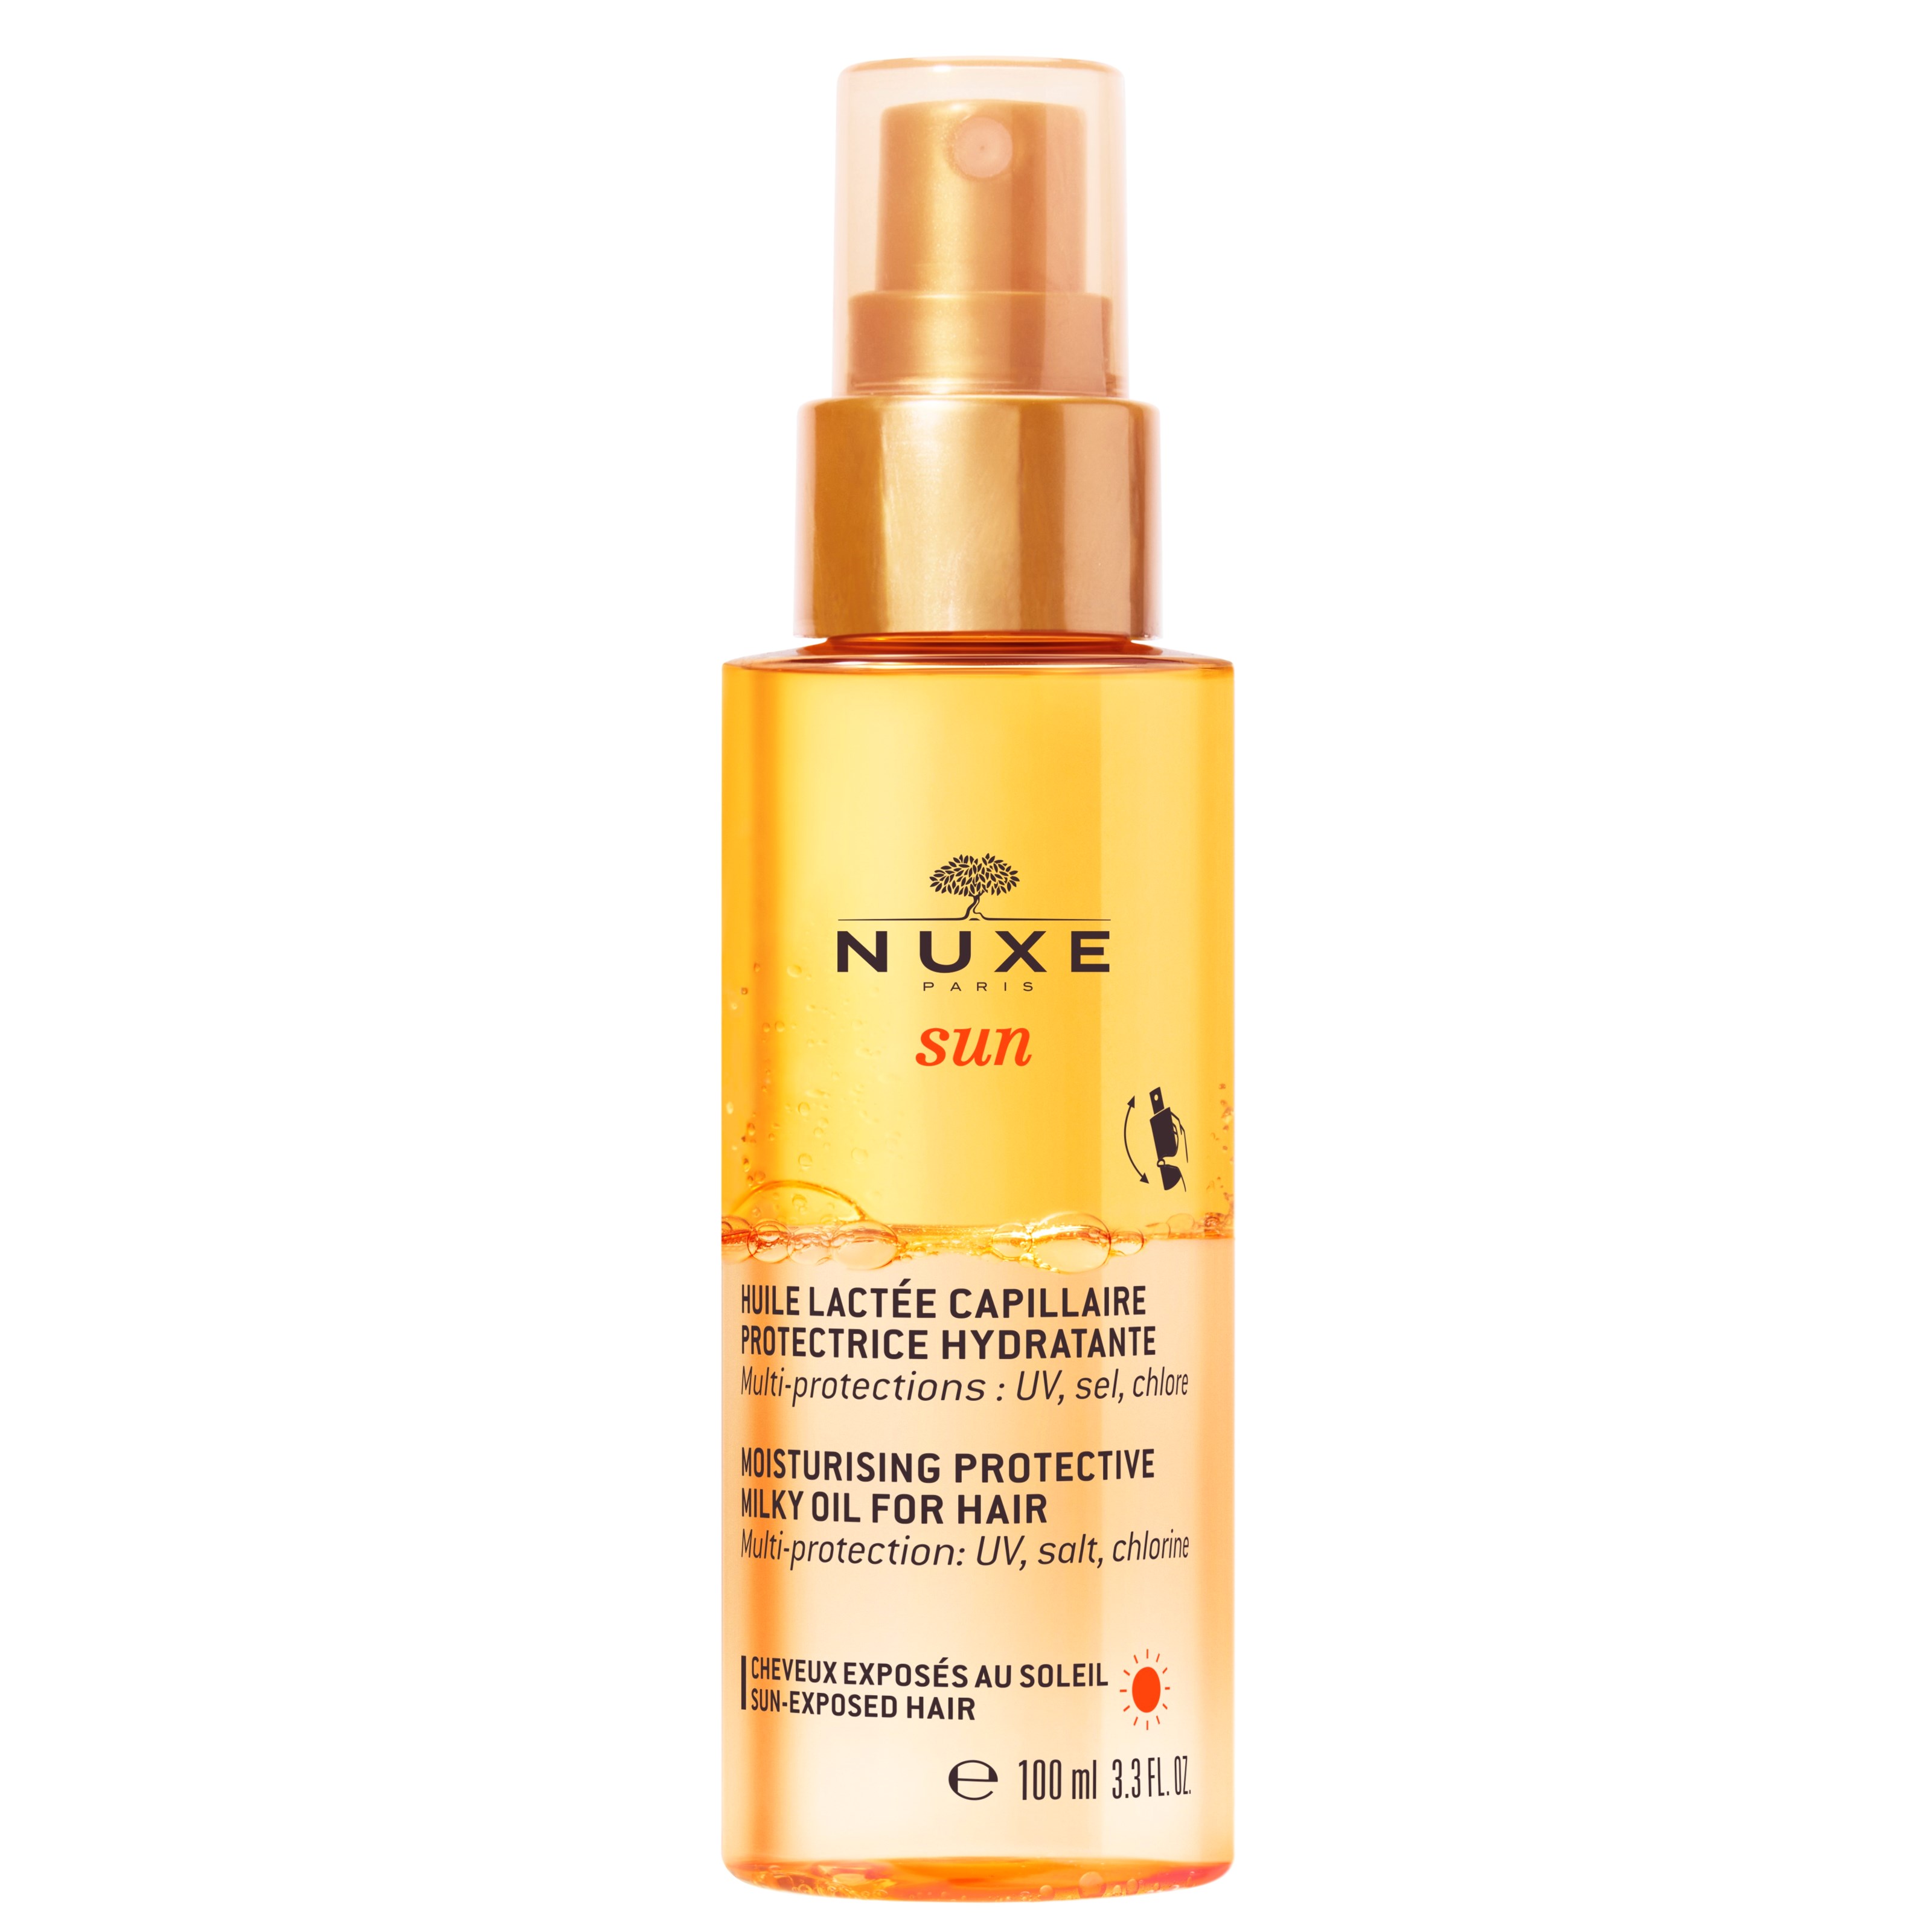 Nuxe Sun Moisturising Protective Milky Oil for Hair 100 ml